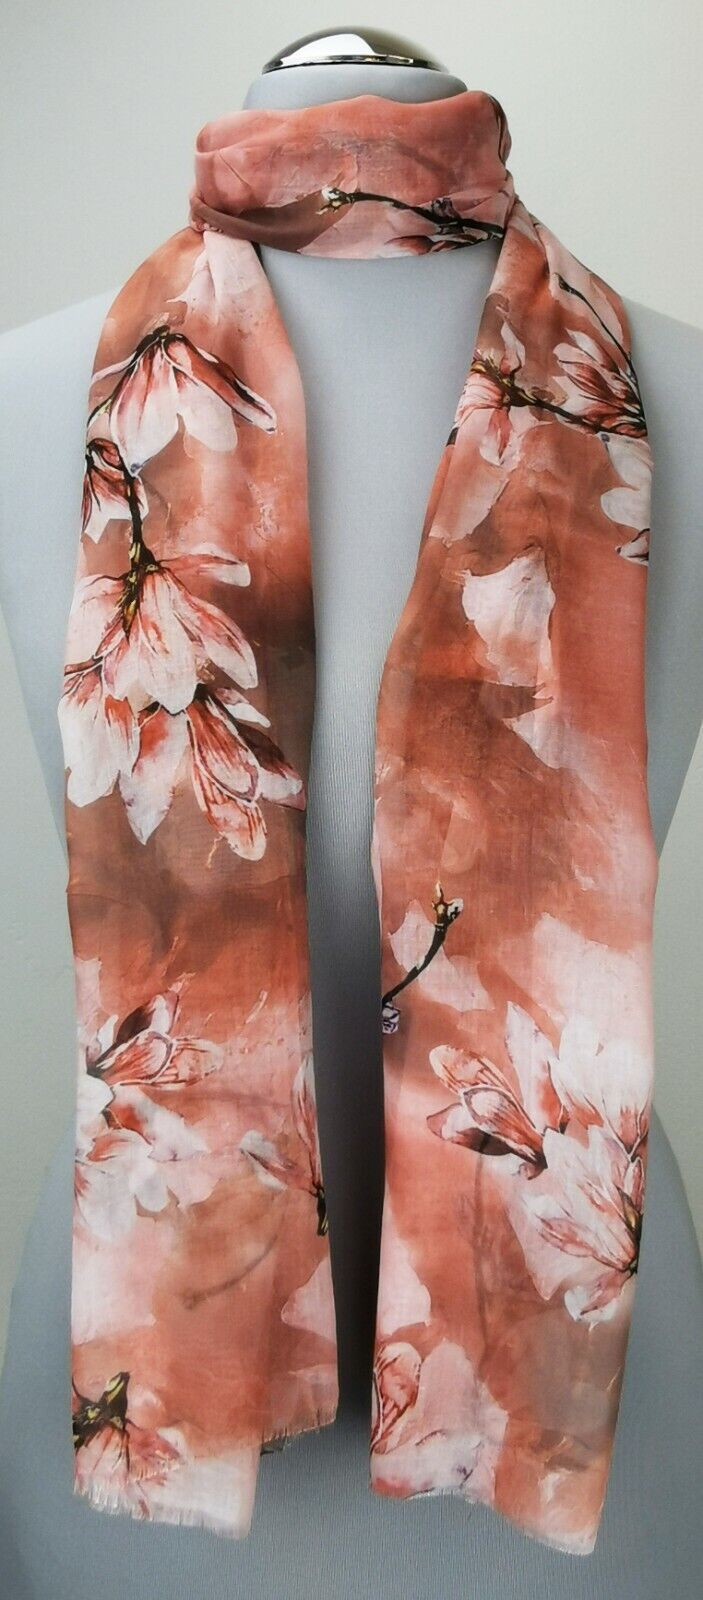  - Leichter Damen-Schal, neu, 170 x 50 cm, rostfarben mit Blumenmuster, # 2232 